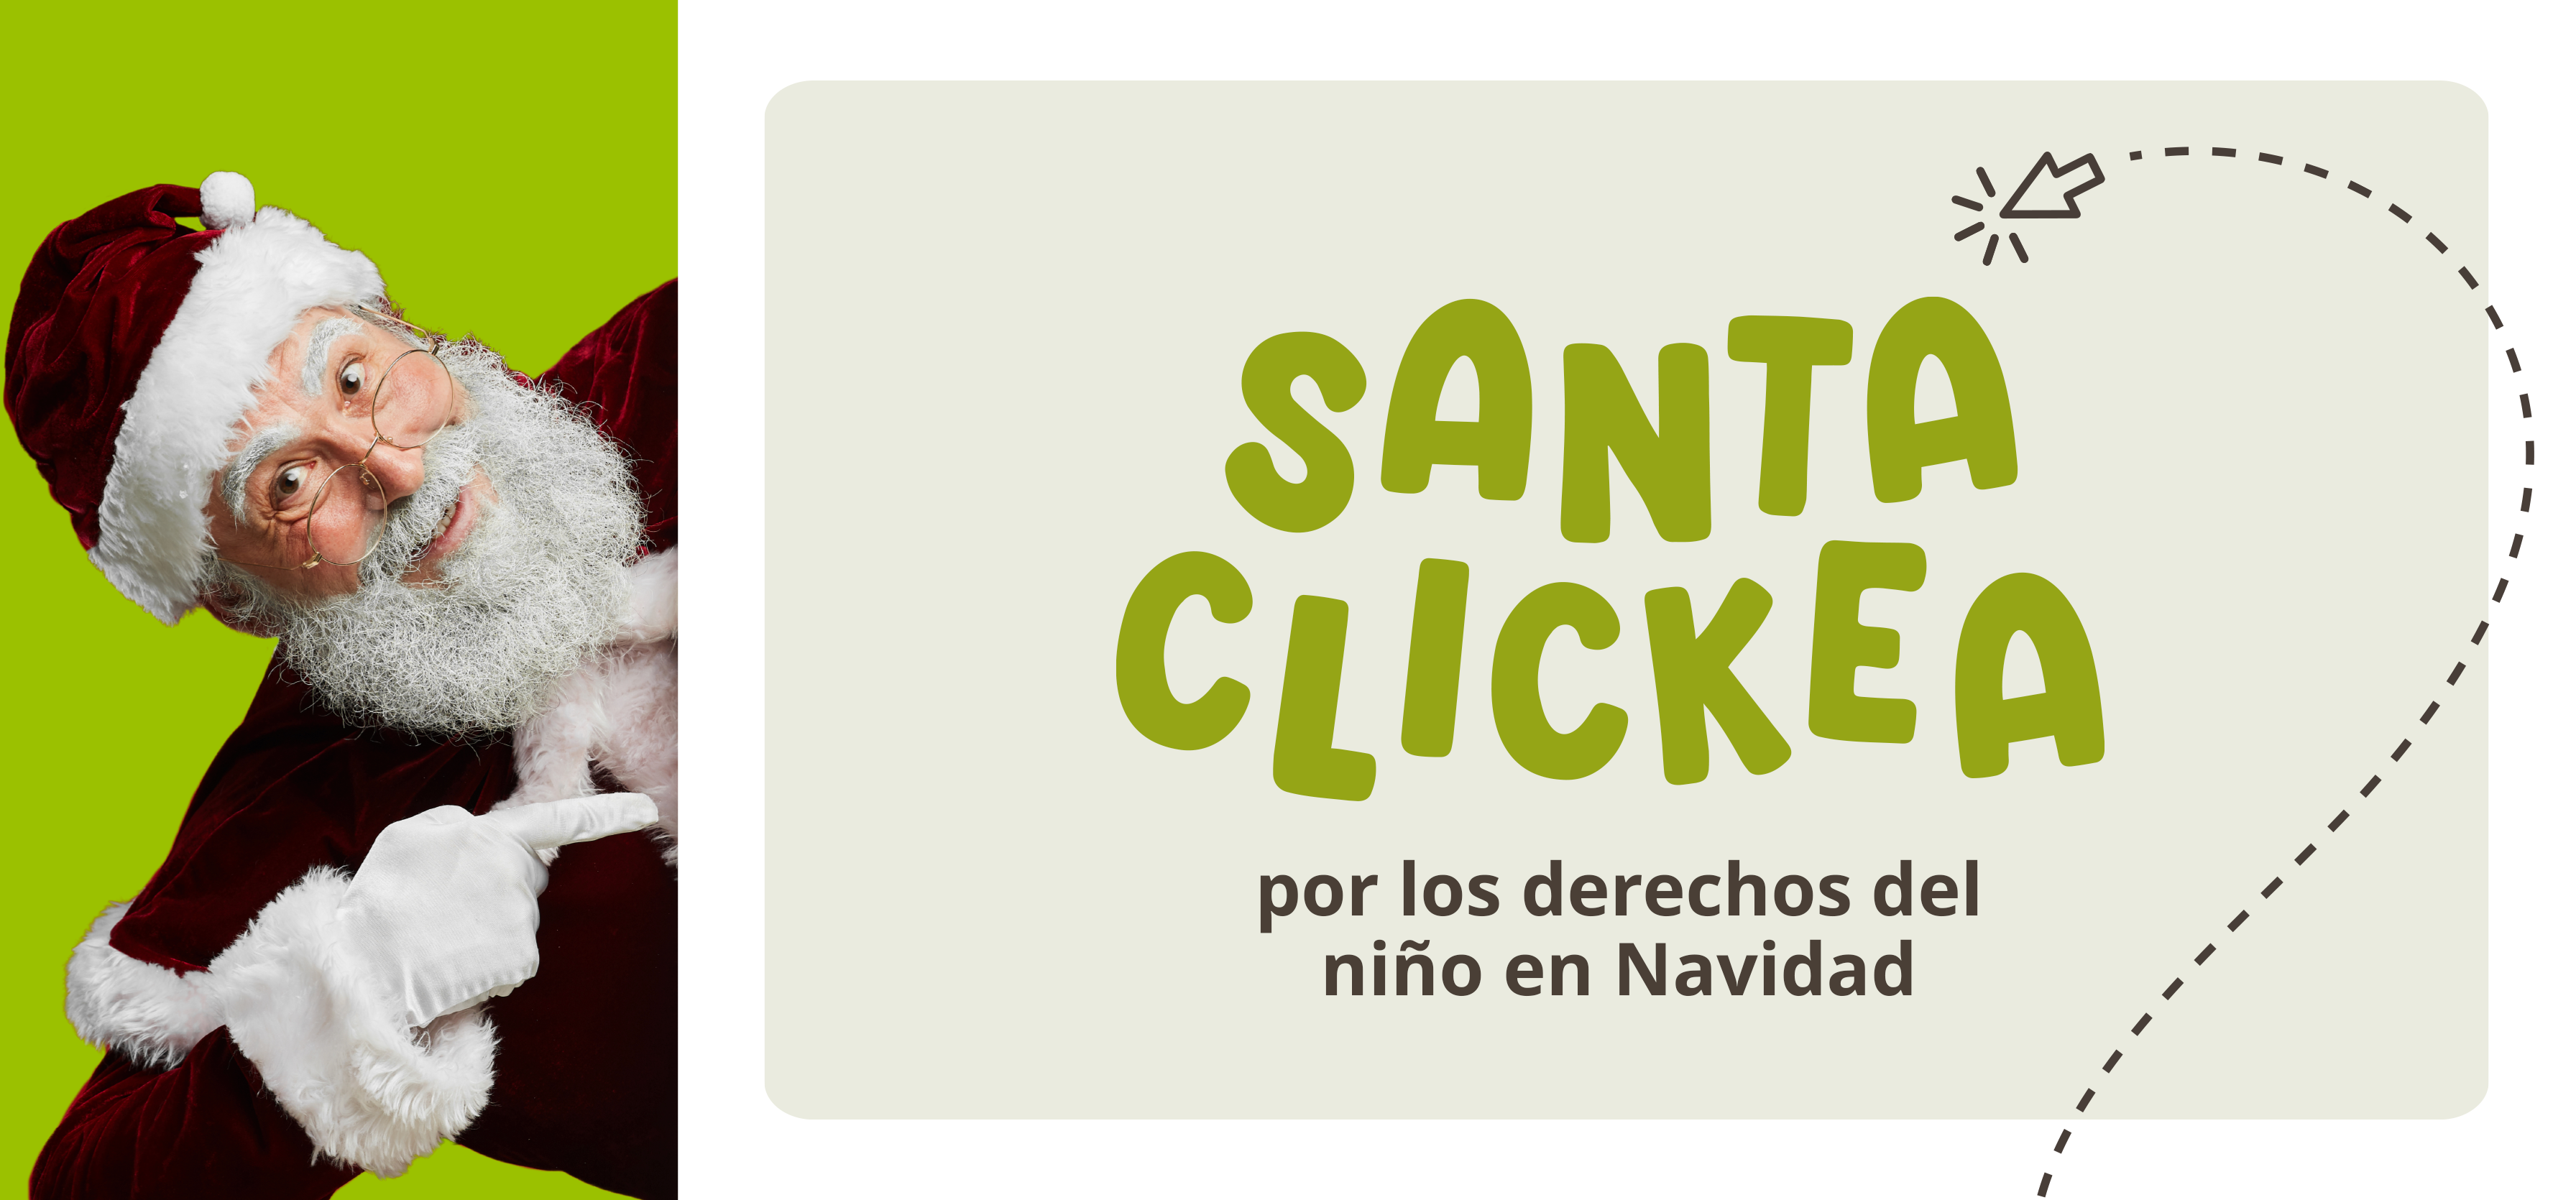 Good Neighbors República Dominicana te invita a participar de la campaña “Santa Clickea por los derechos de los niños en Navidad”